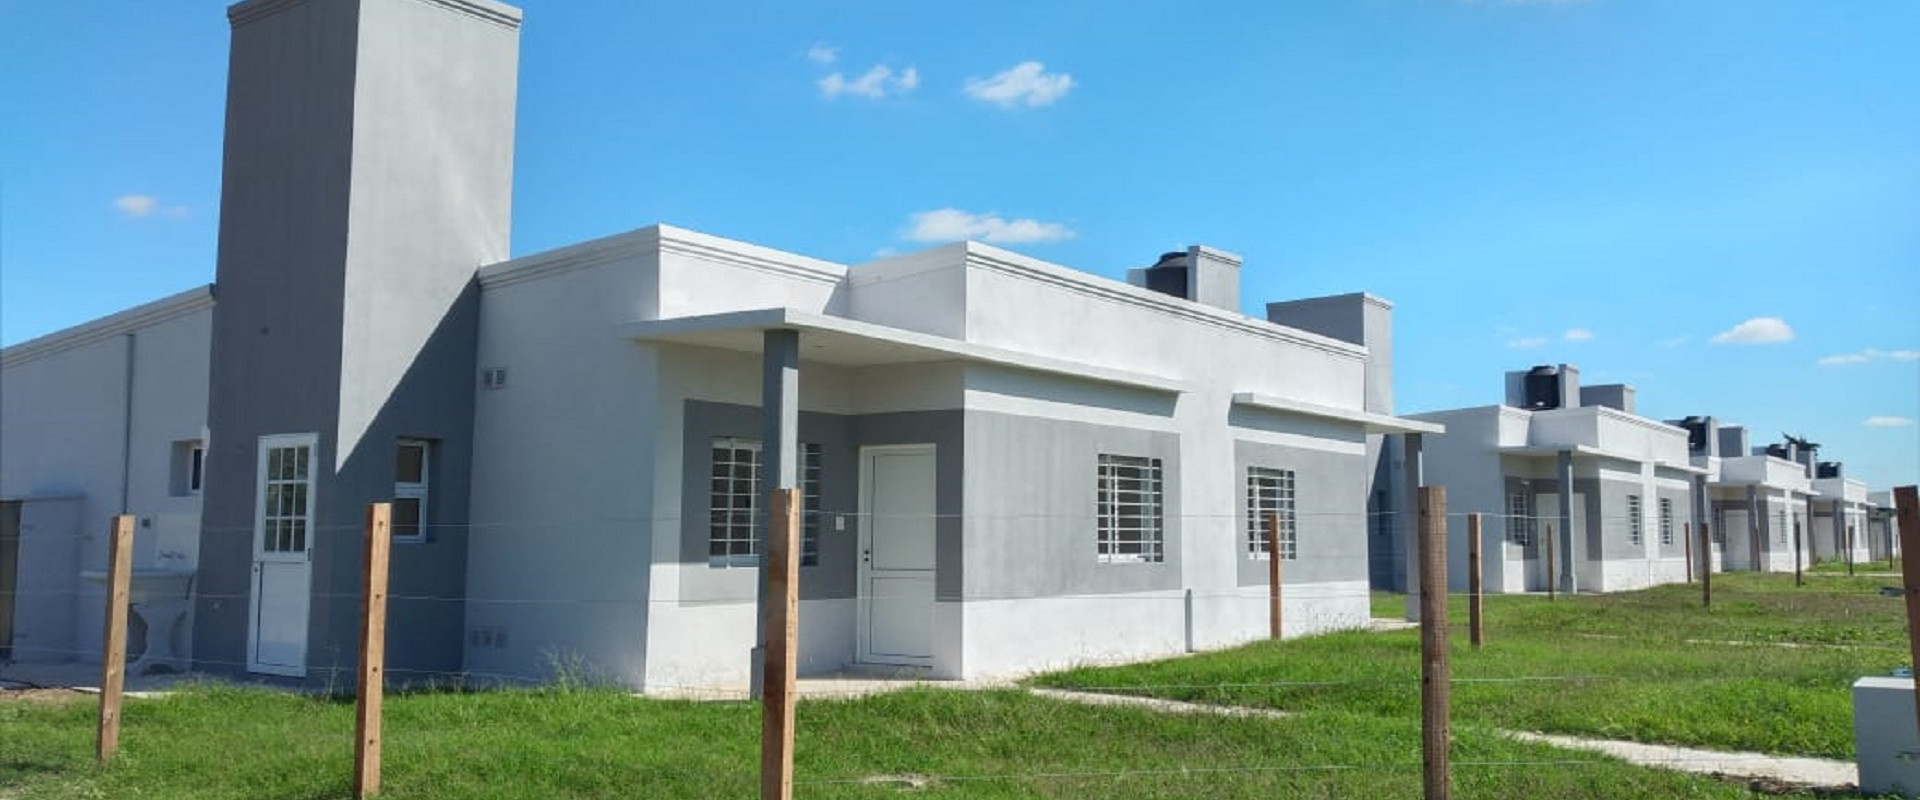 La provincia trabaja en nuevas viviendas para Aldea San Antonio y Santa Elena